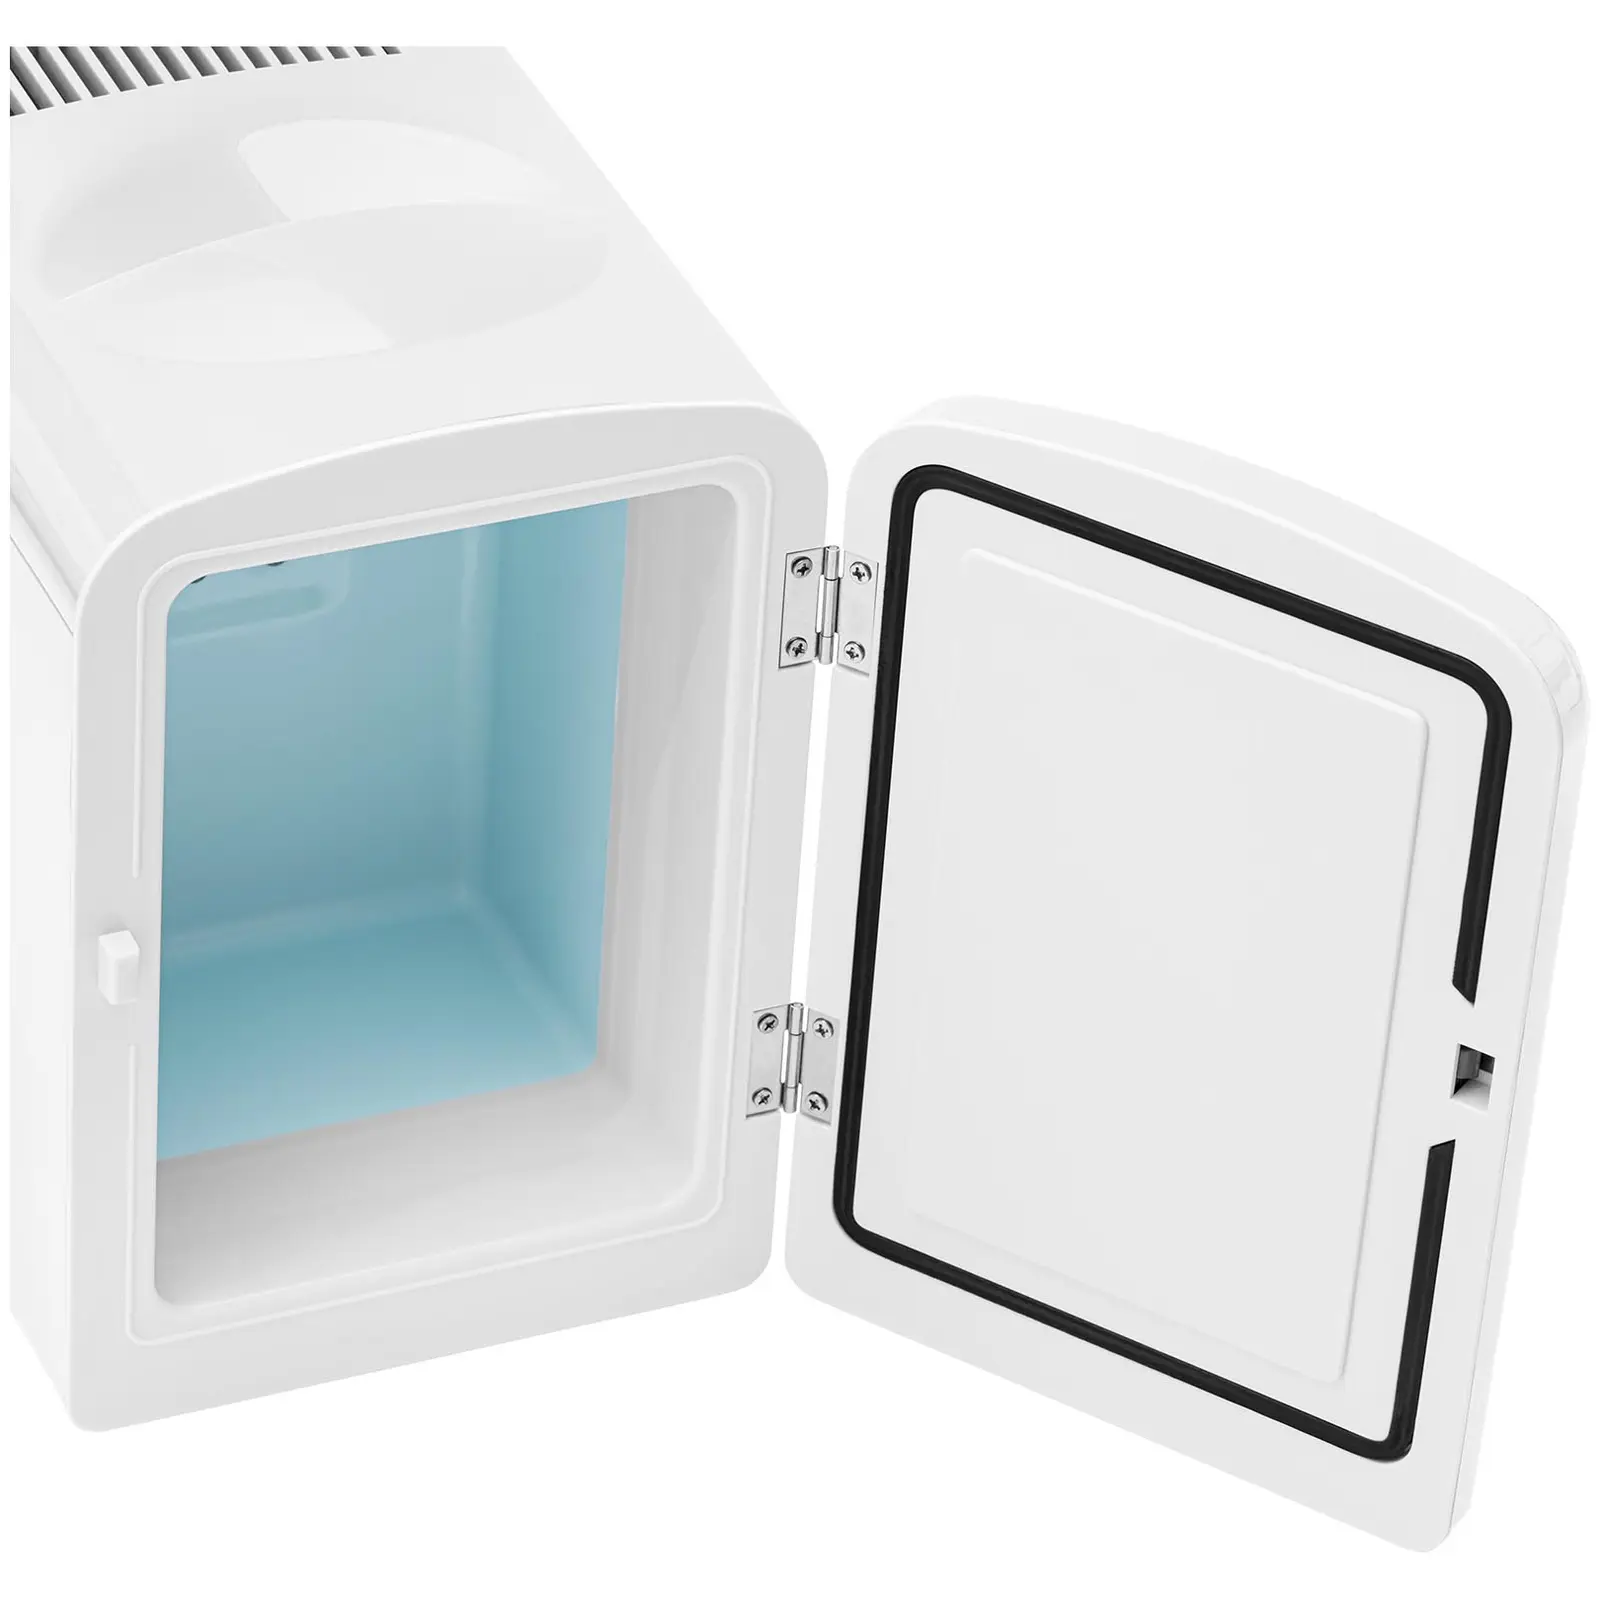 Mini-køleskab 12V 230V - varmefunktion - 4 l - hvidt